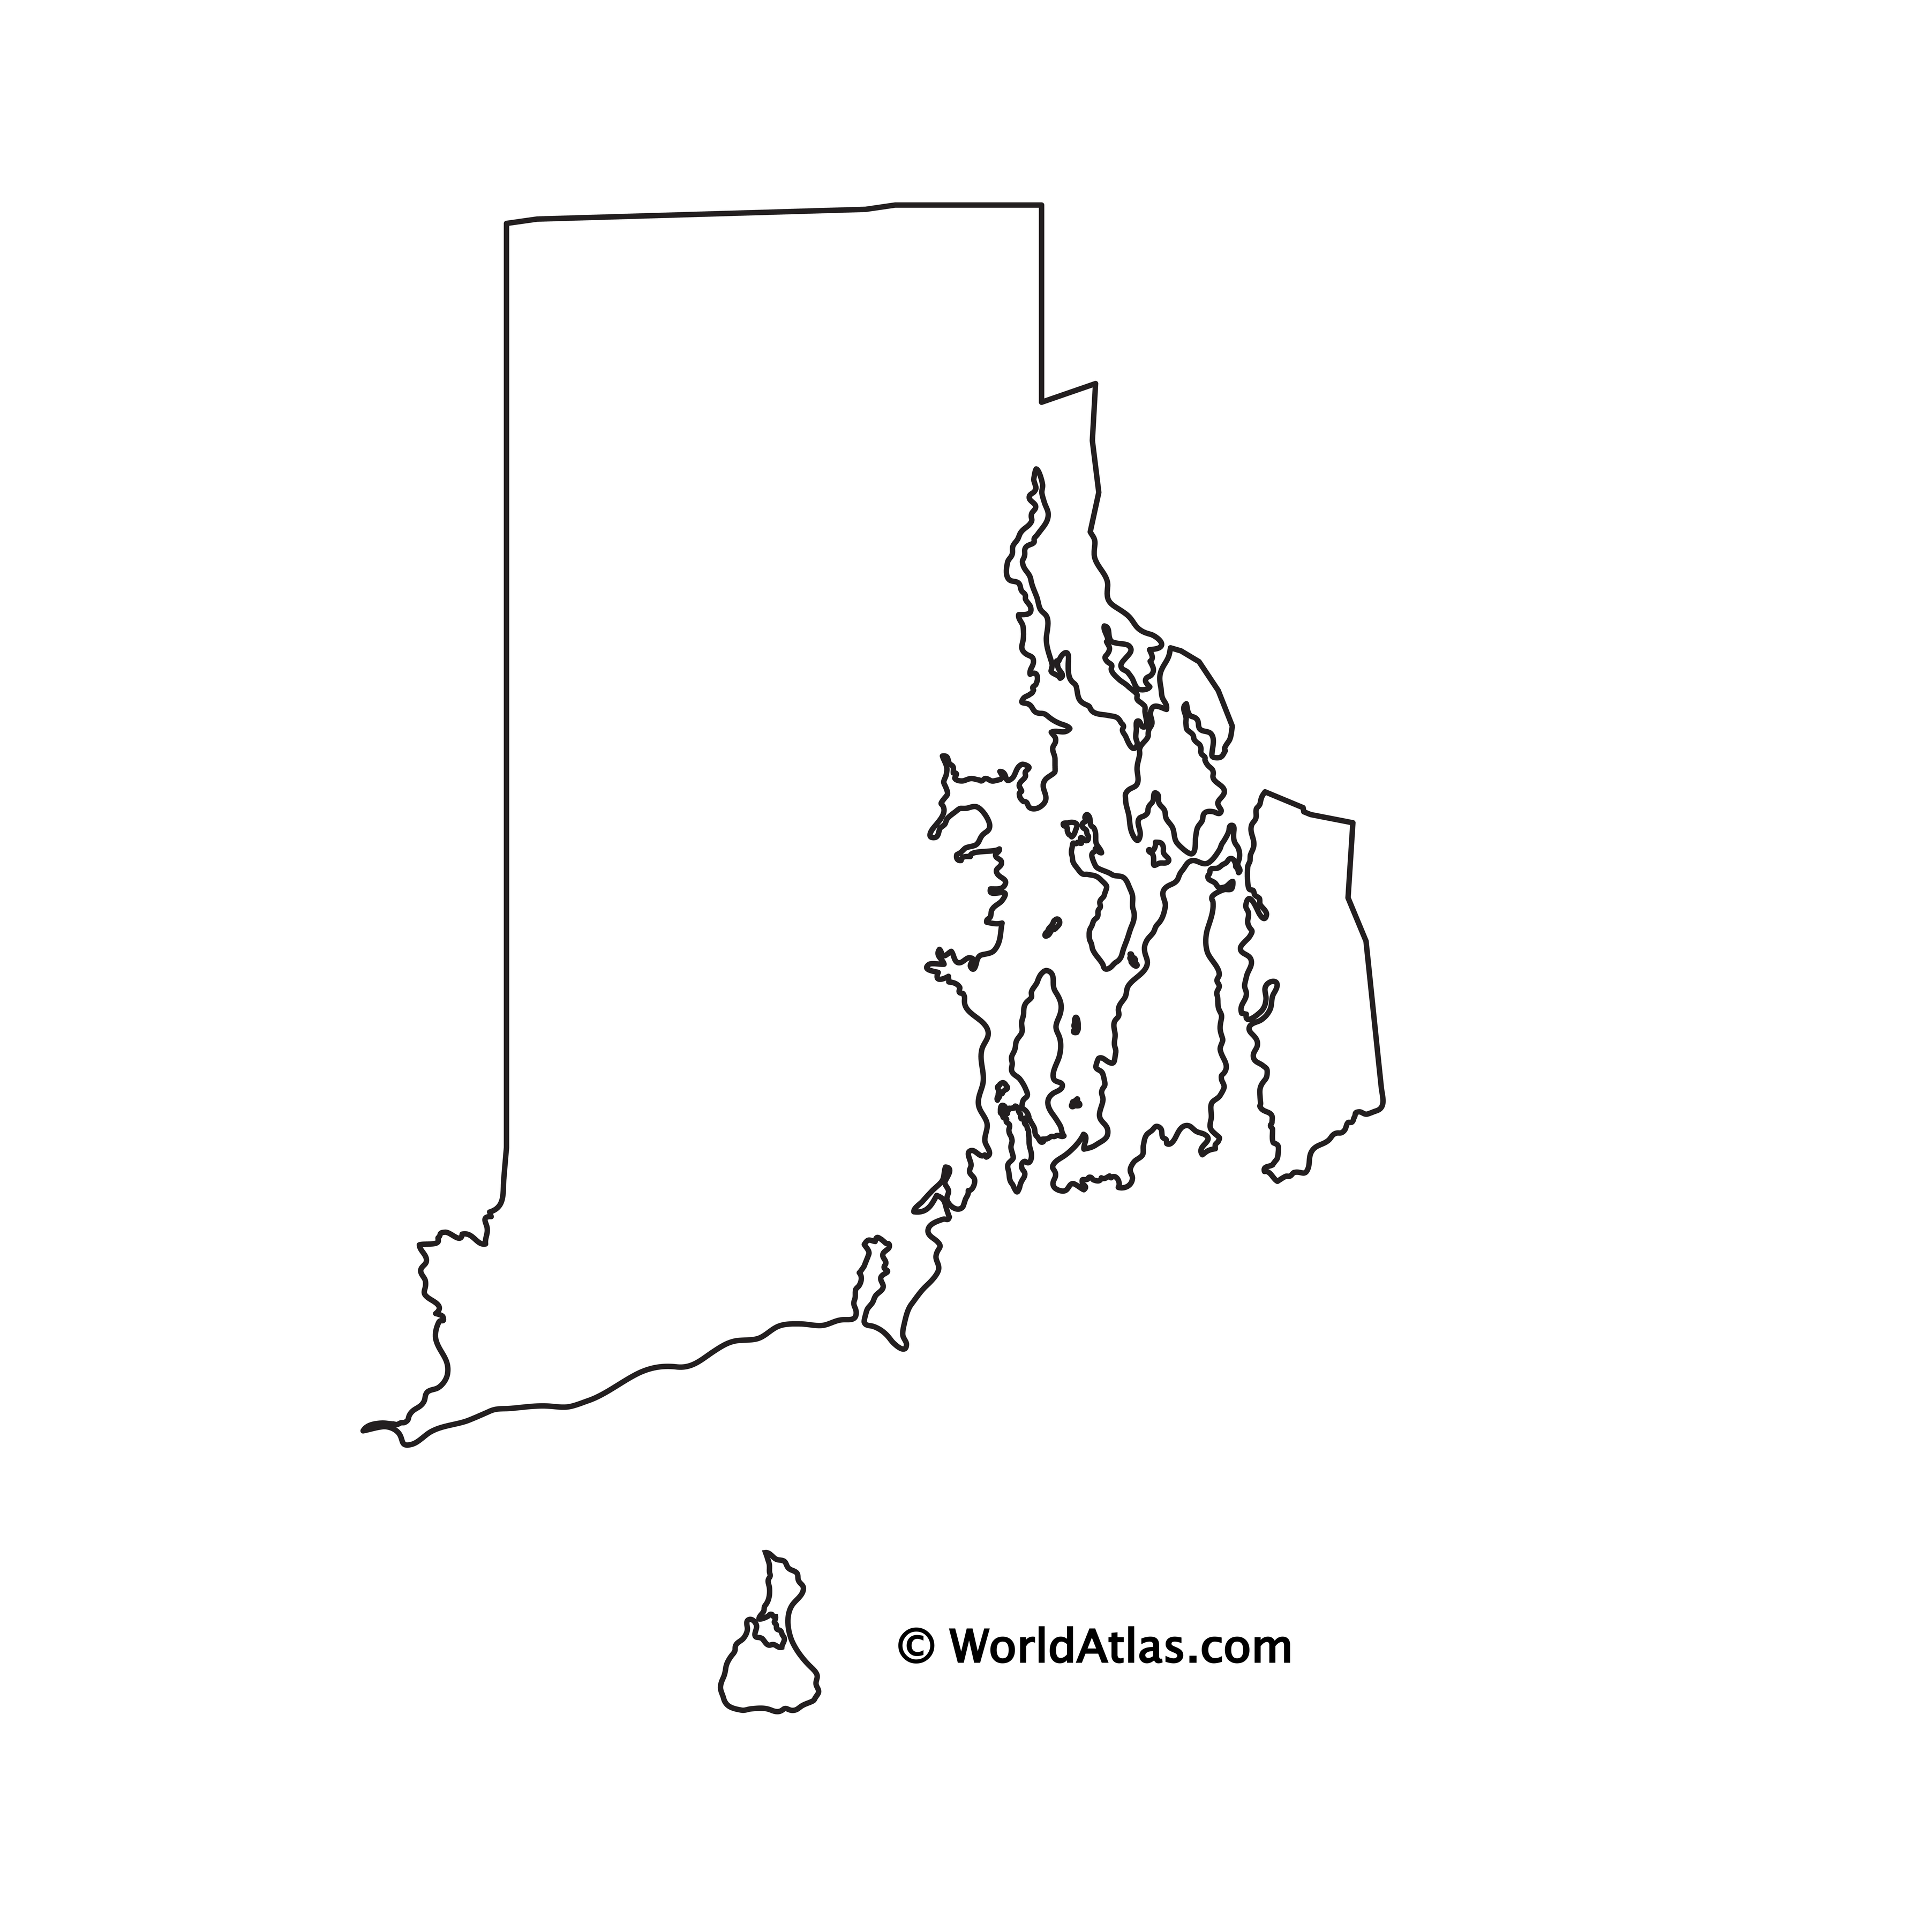 Rhode Island Maps Facts World Atlas